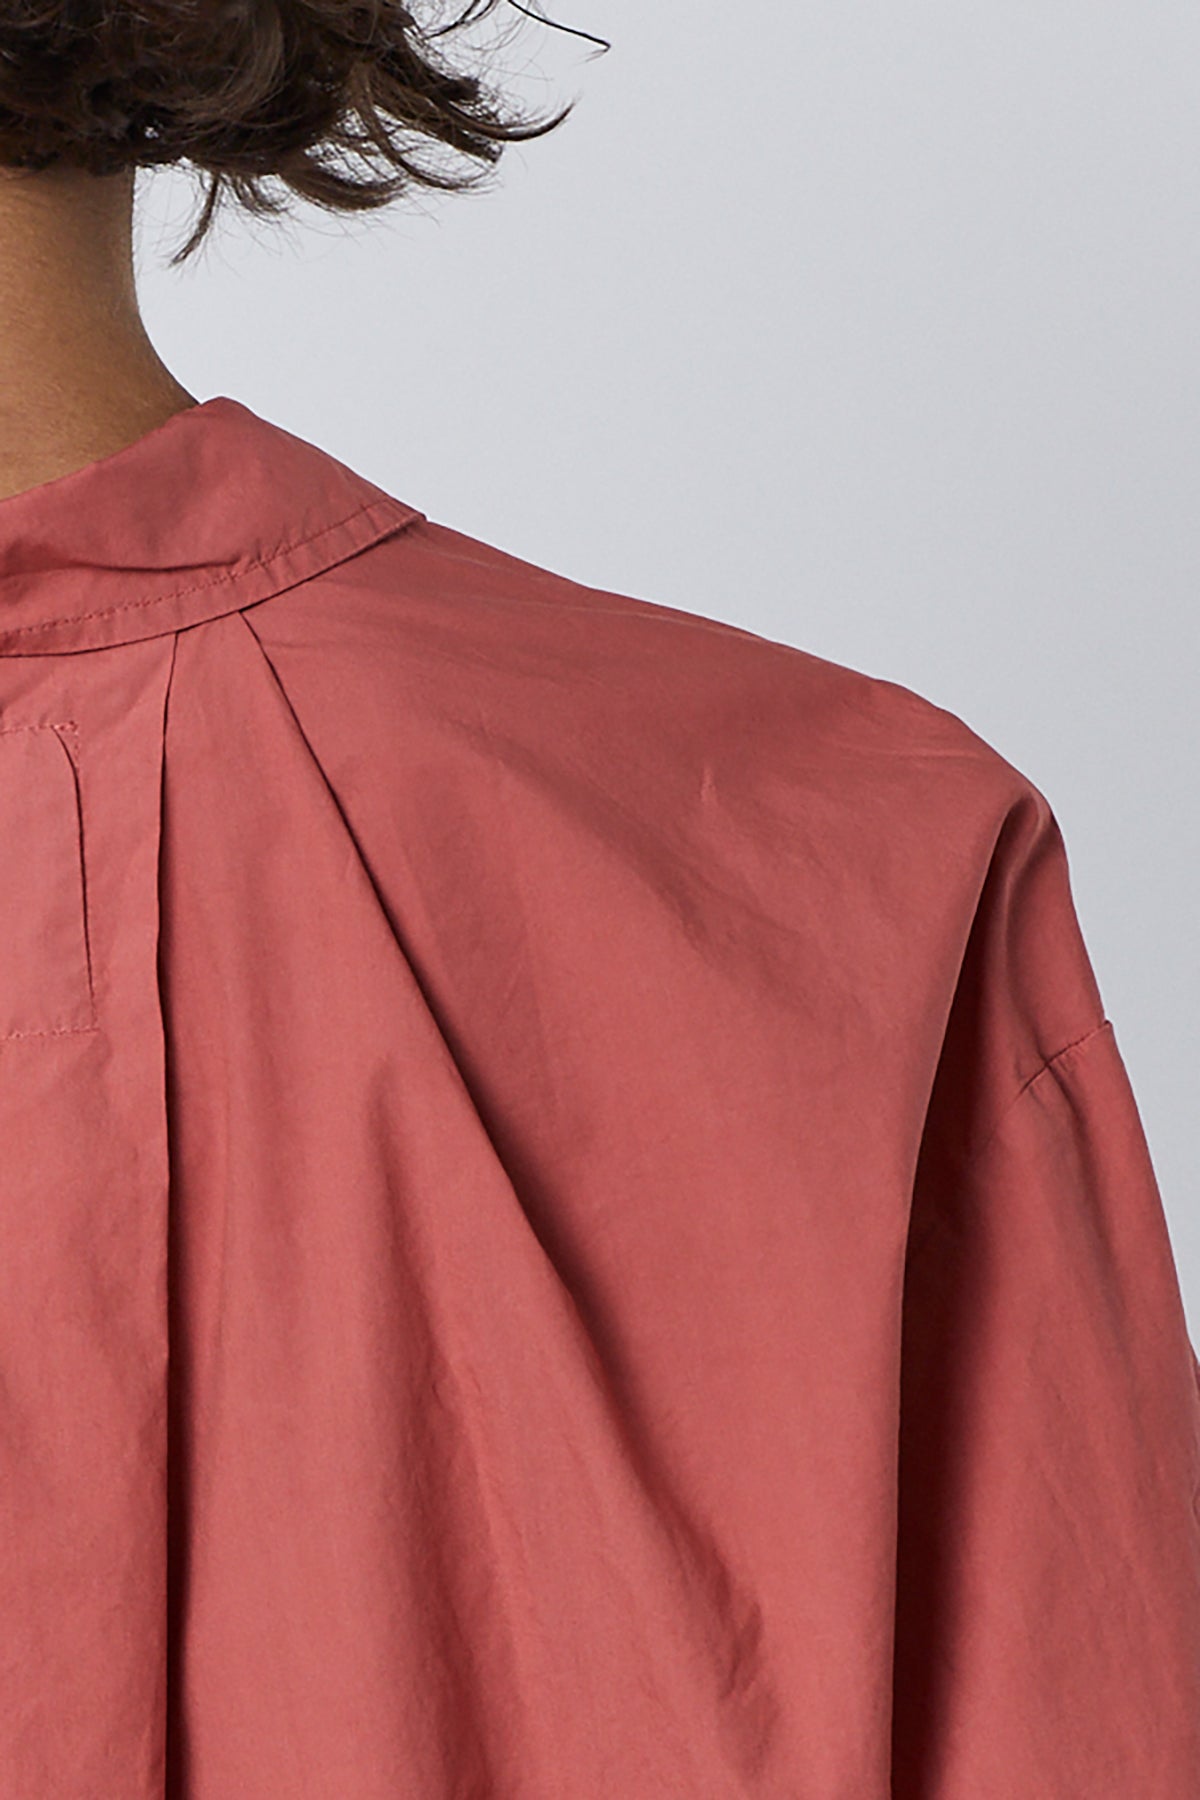 Velvet by Jenny Graham Brea Shirt in cedar back shoulder detail-26002783043777